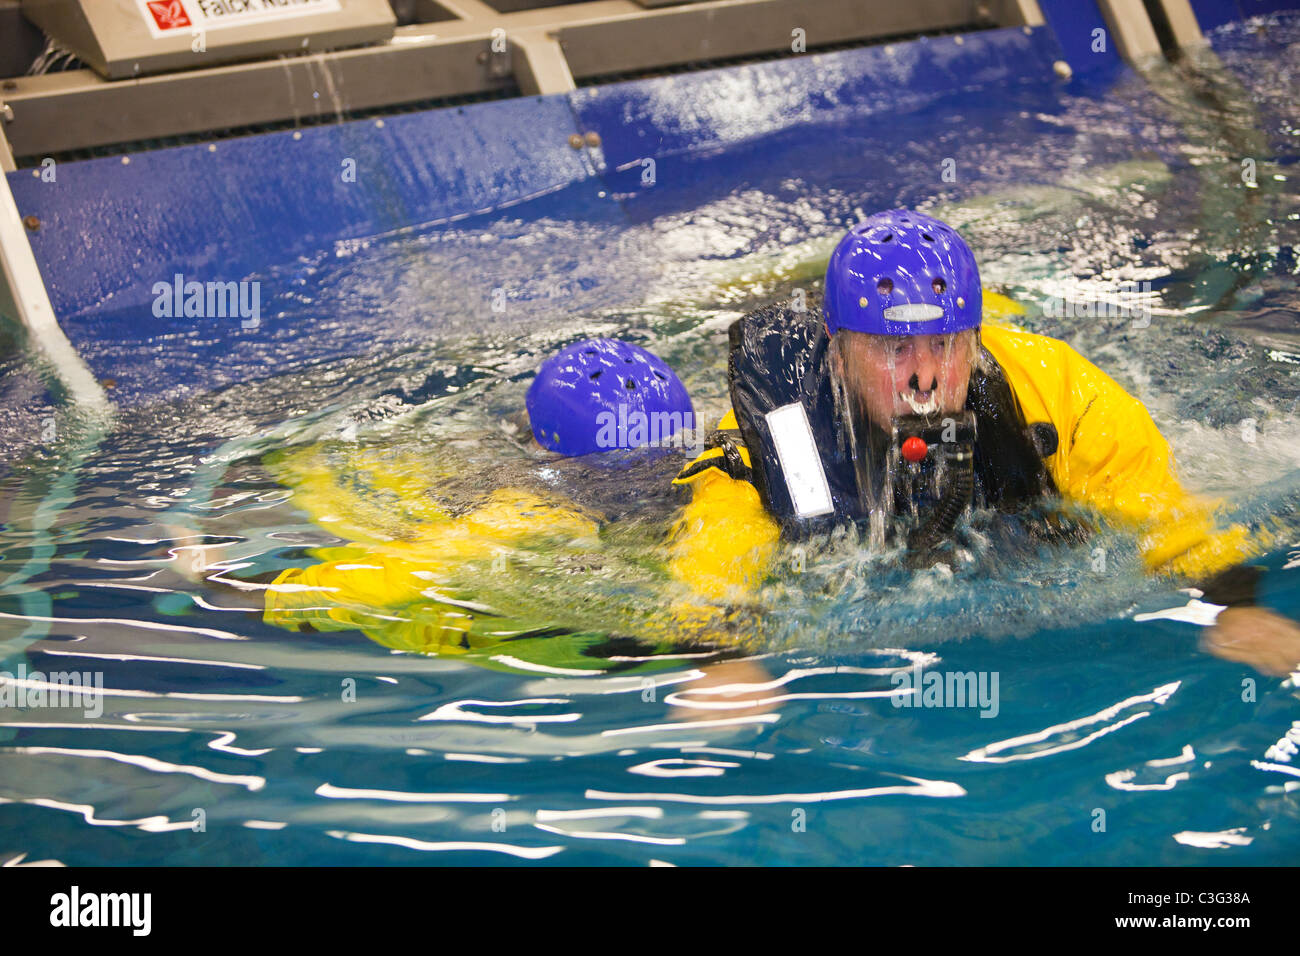 Arbeiter in der Offshore-Industrie Praxis Hubschrauber Notwasserung Evakuierung im Rahmen einer Industrie-Schulung Stockfoto